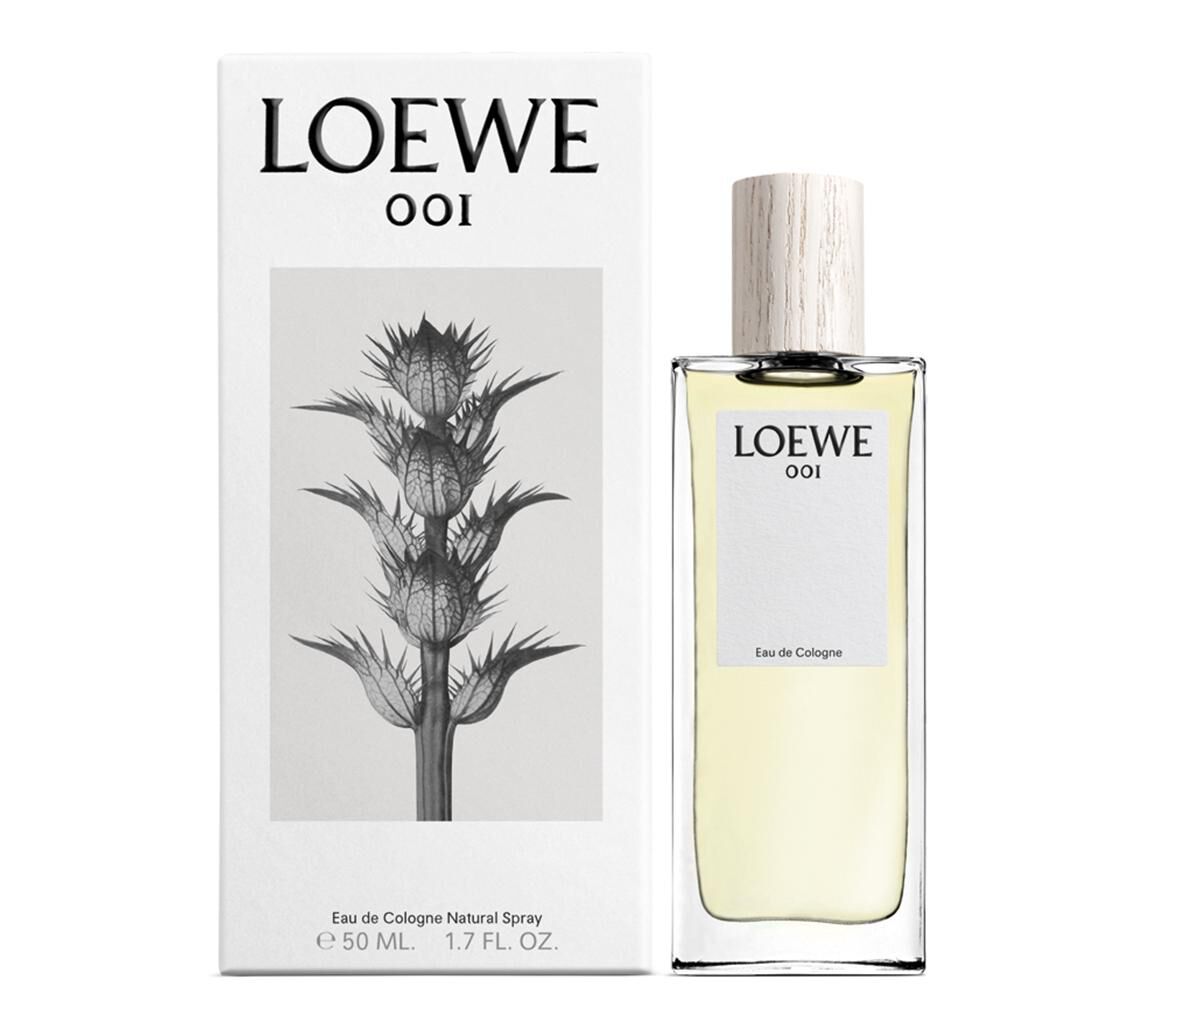 Buy online LOEWE 001 Eau de Cologne 